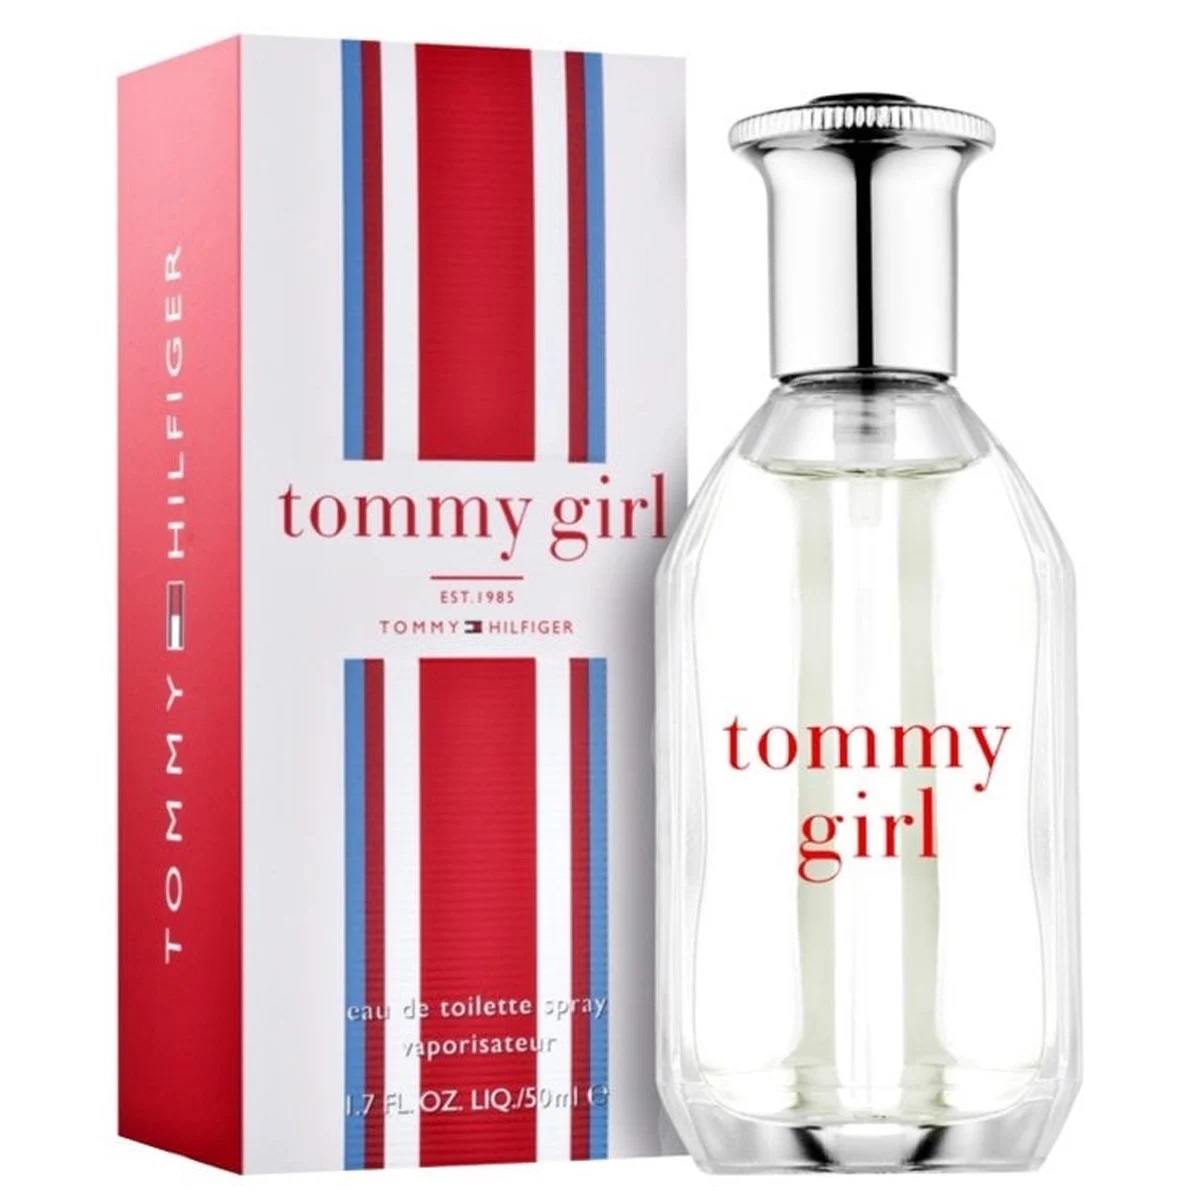 NƯỚC HOA NỮ TOMMY HILFIGER TOMMY GIRL EAU DE TOILETTE 4